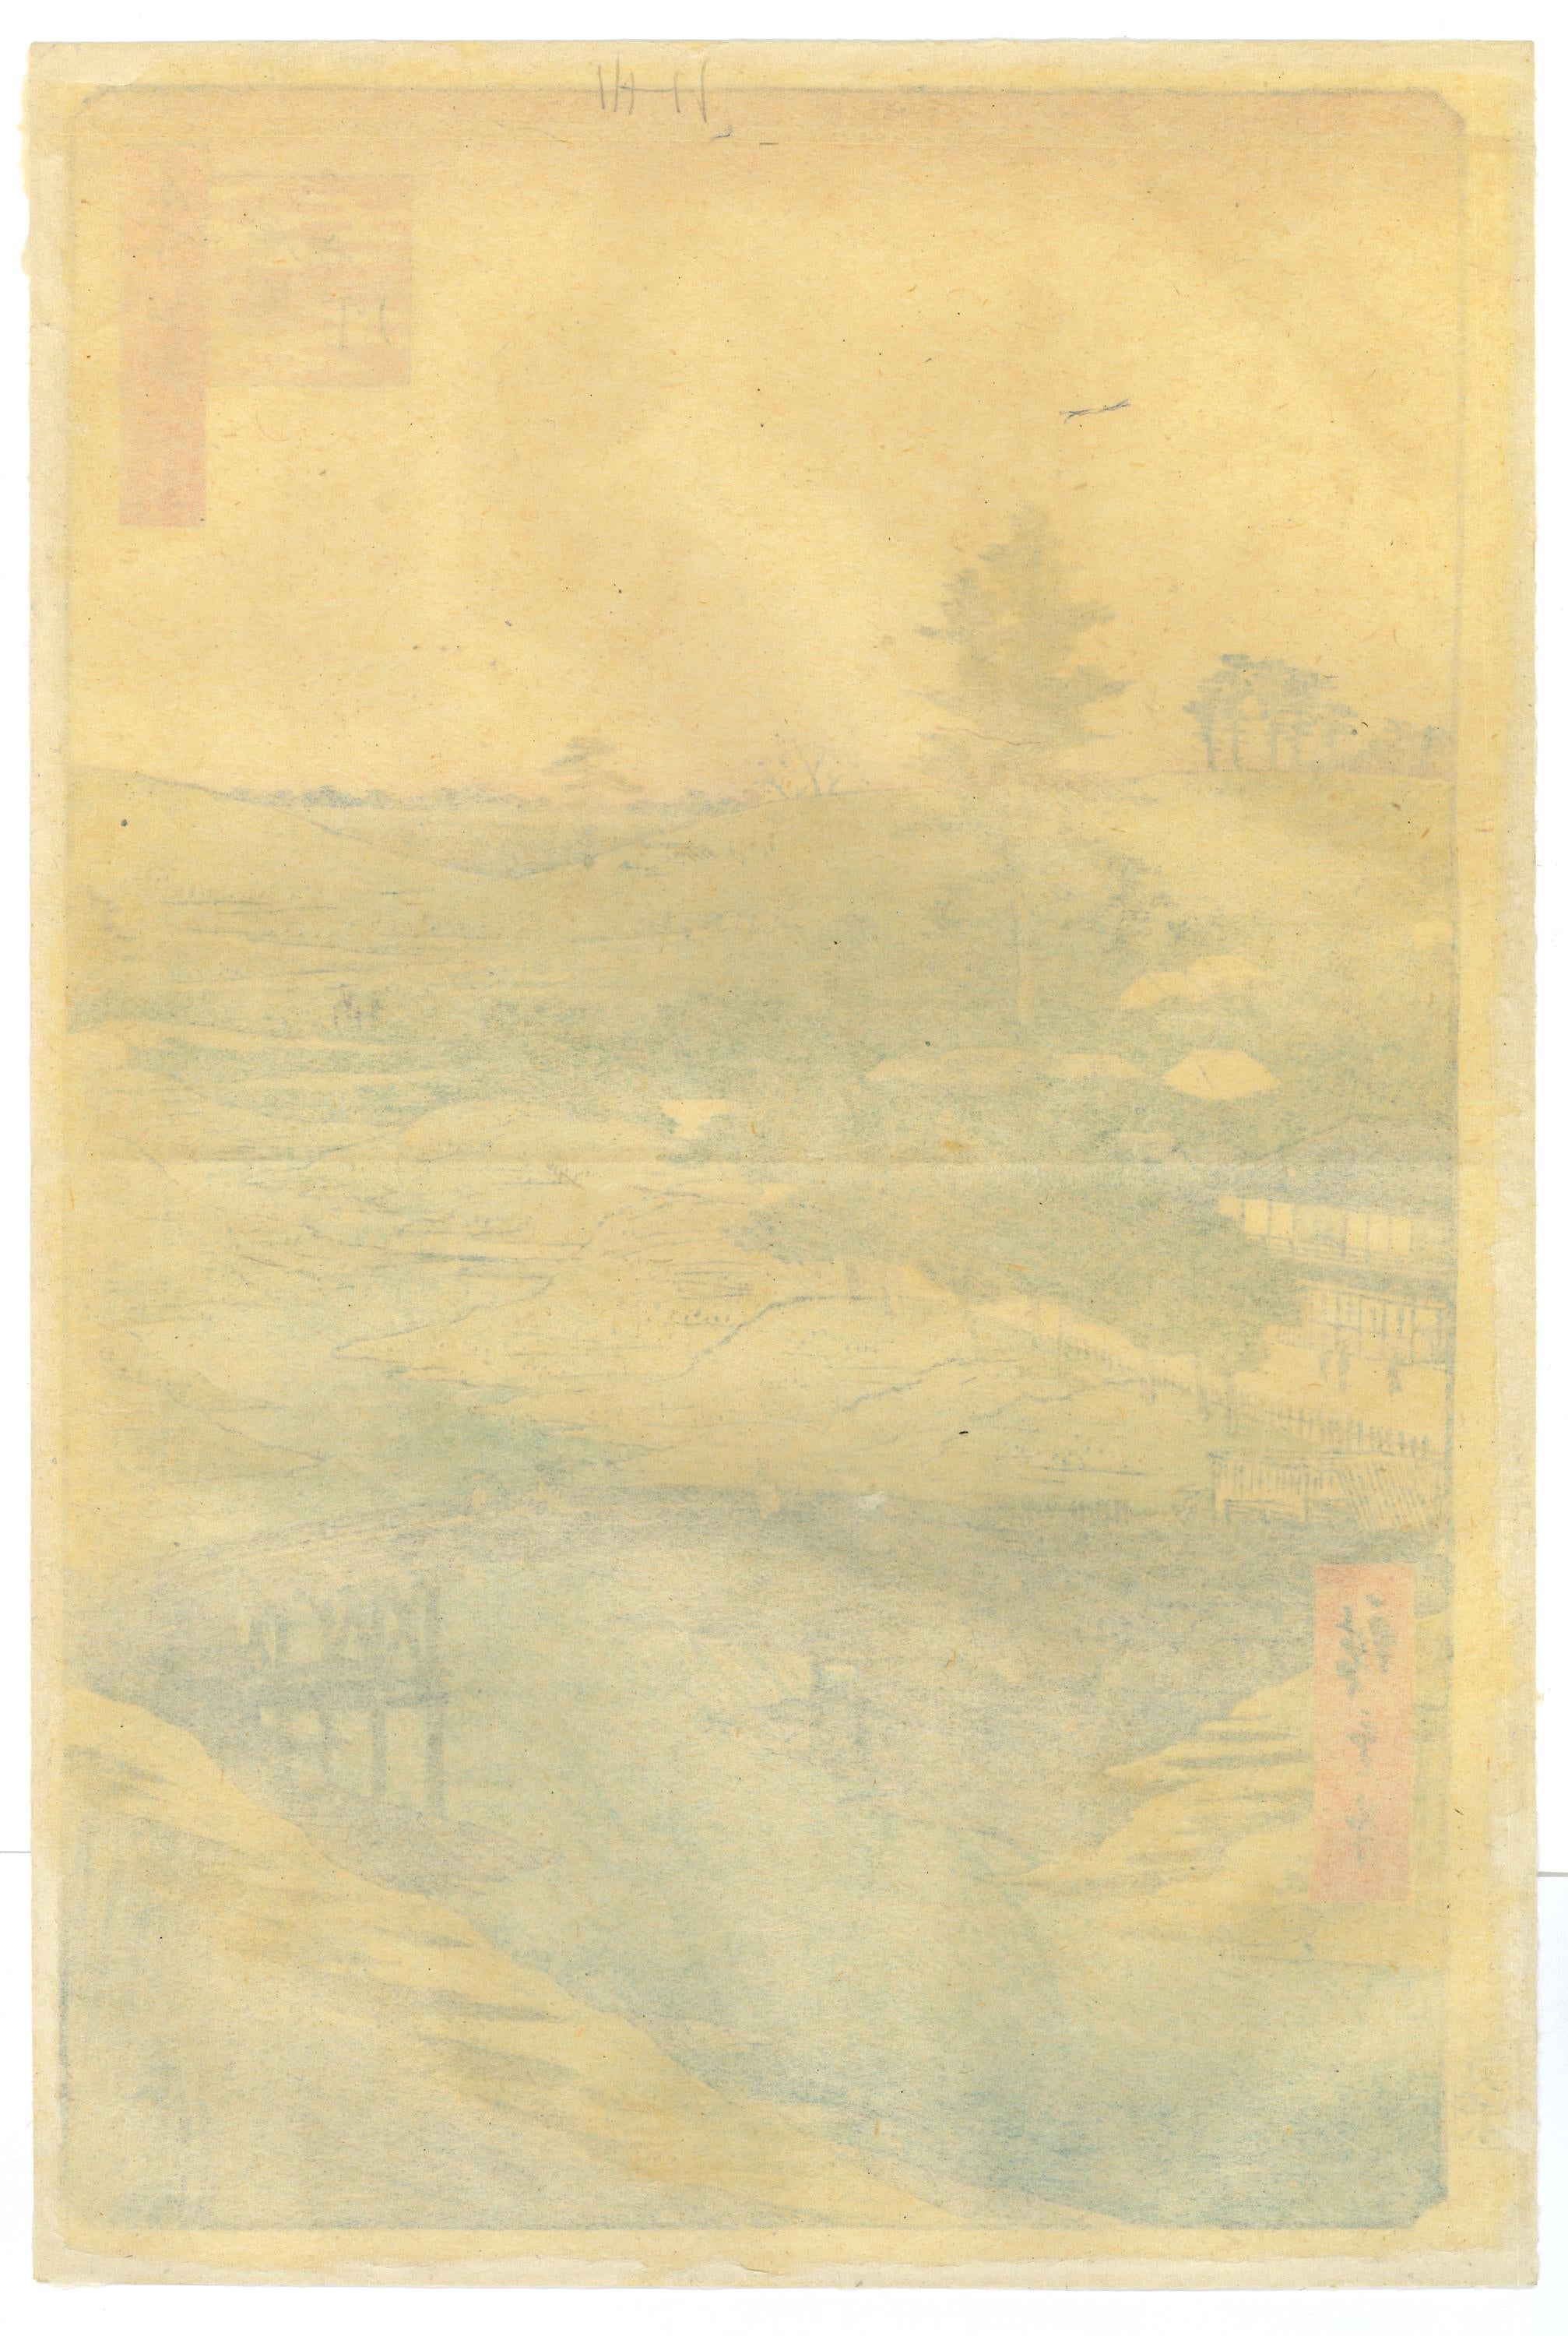 View of Furukawa River, Hiroo - by Hiroshige Utagawa - 1856 - Print by Utagawa Hiroshige (Ando Hiroshige)